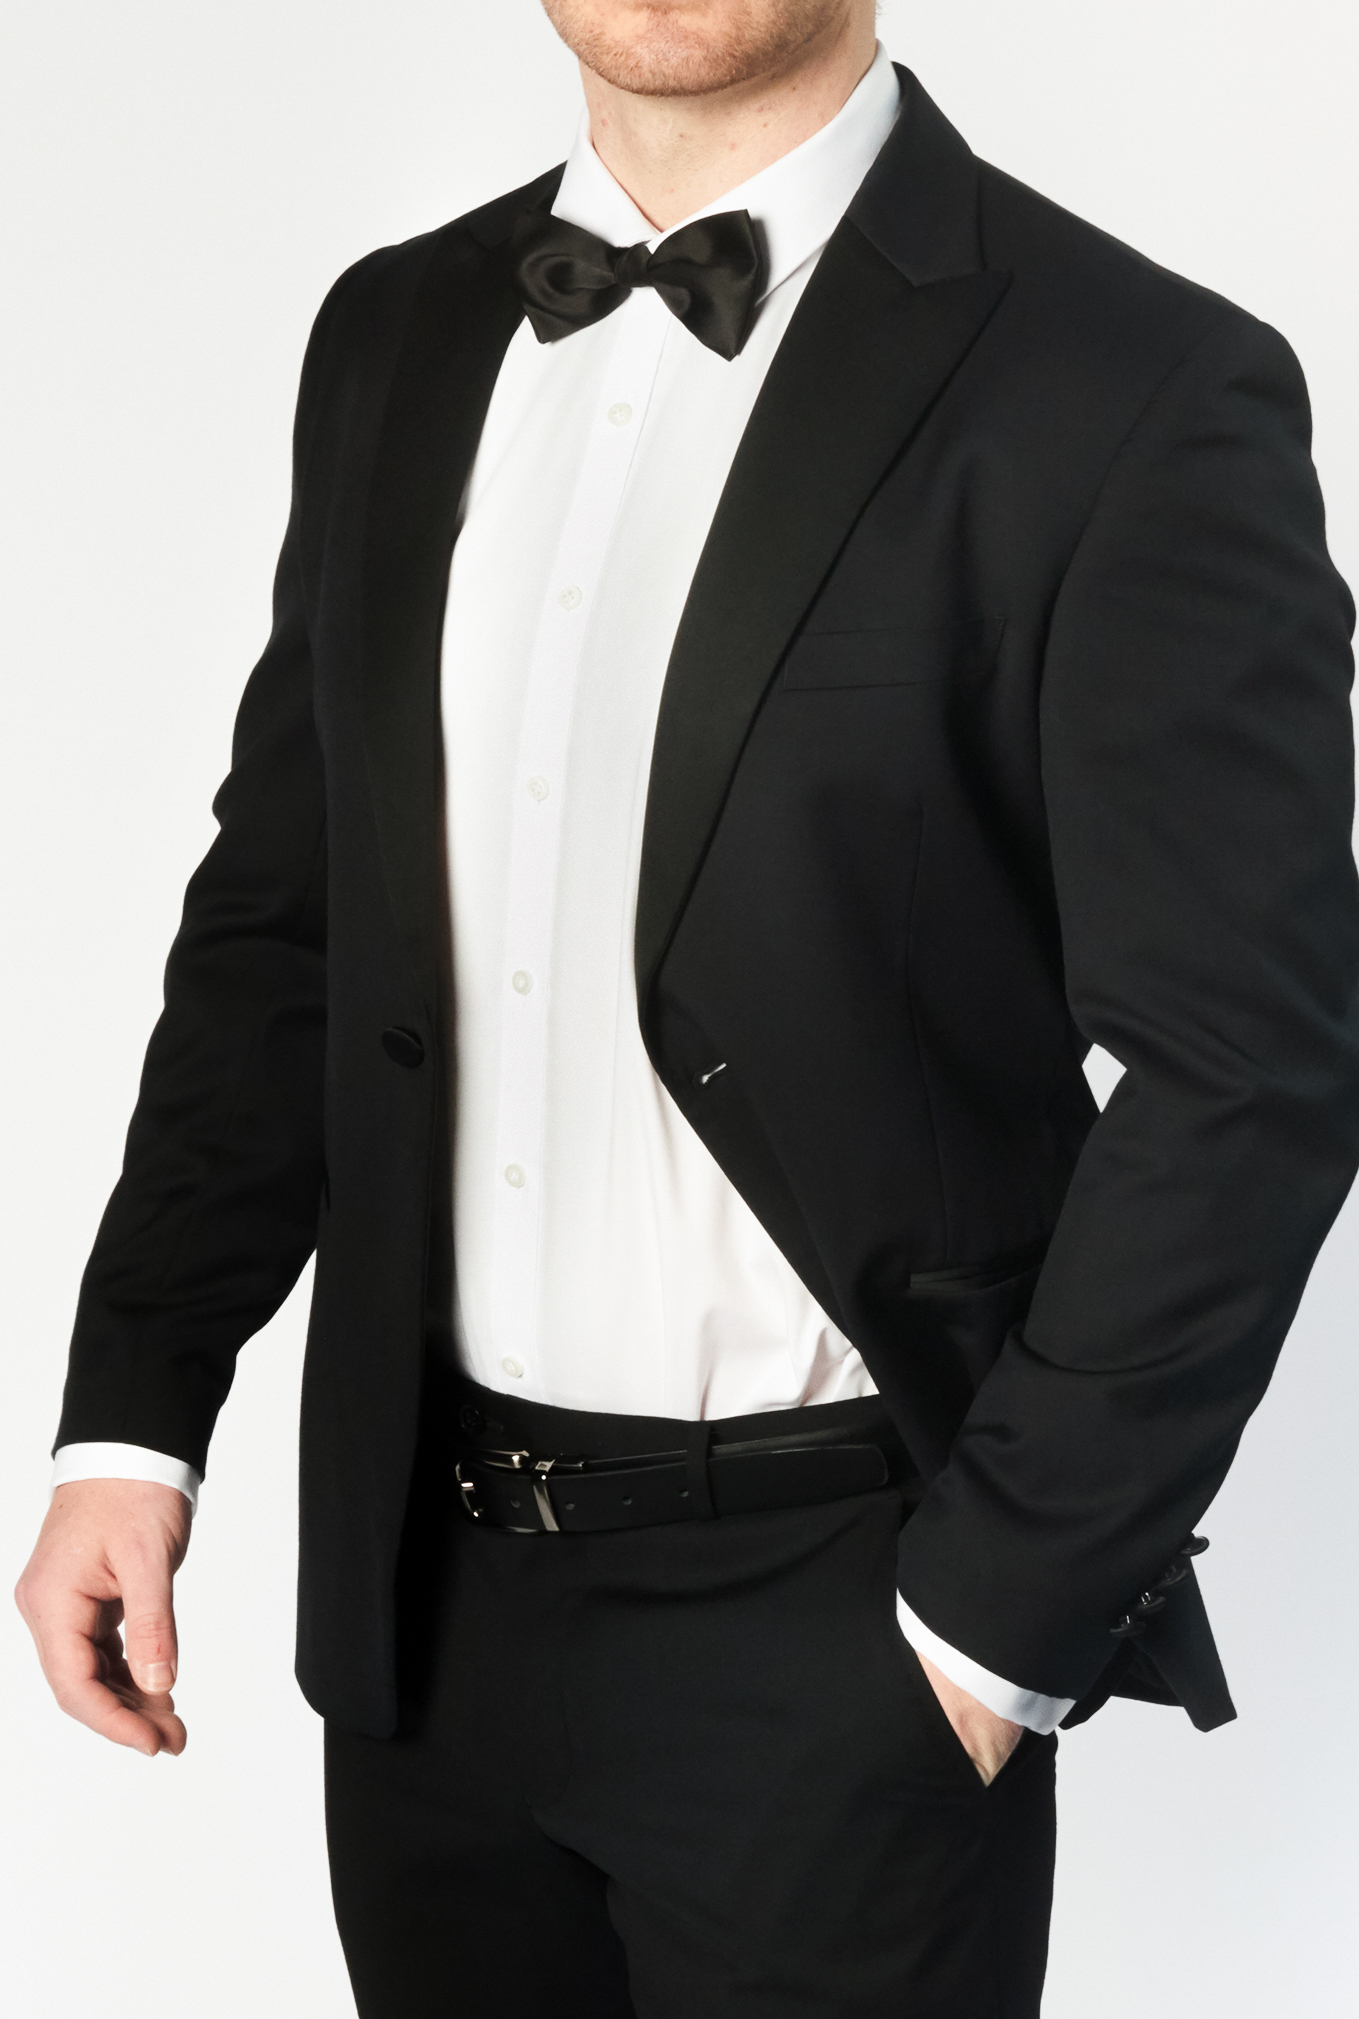 The Oxford | Black Tuxedo for Hire | Perth WA | Britton's Formal Wear